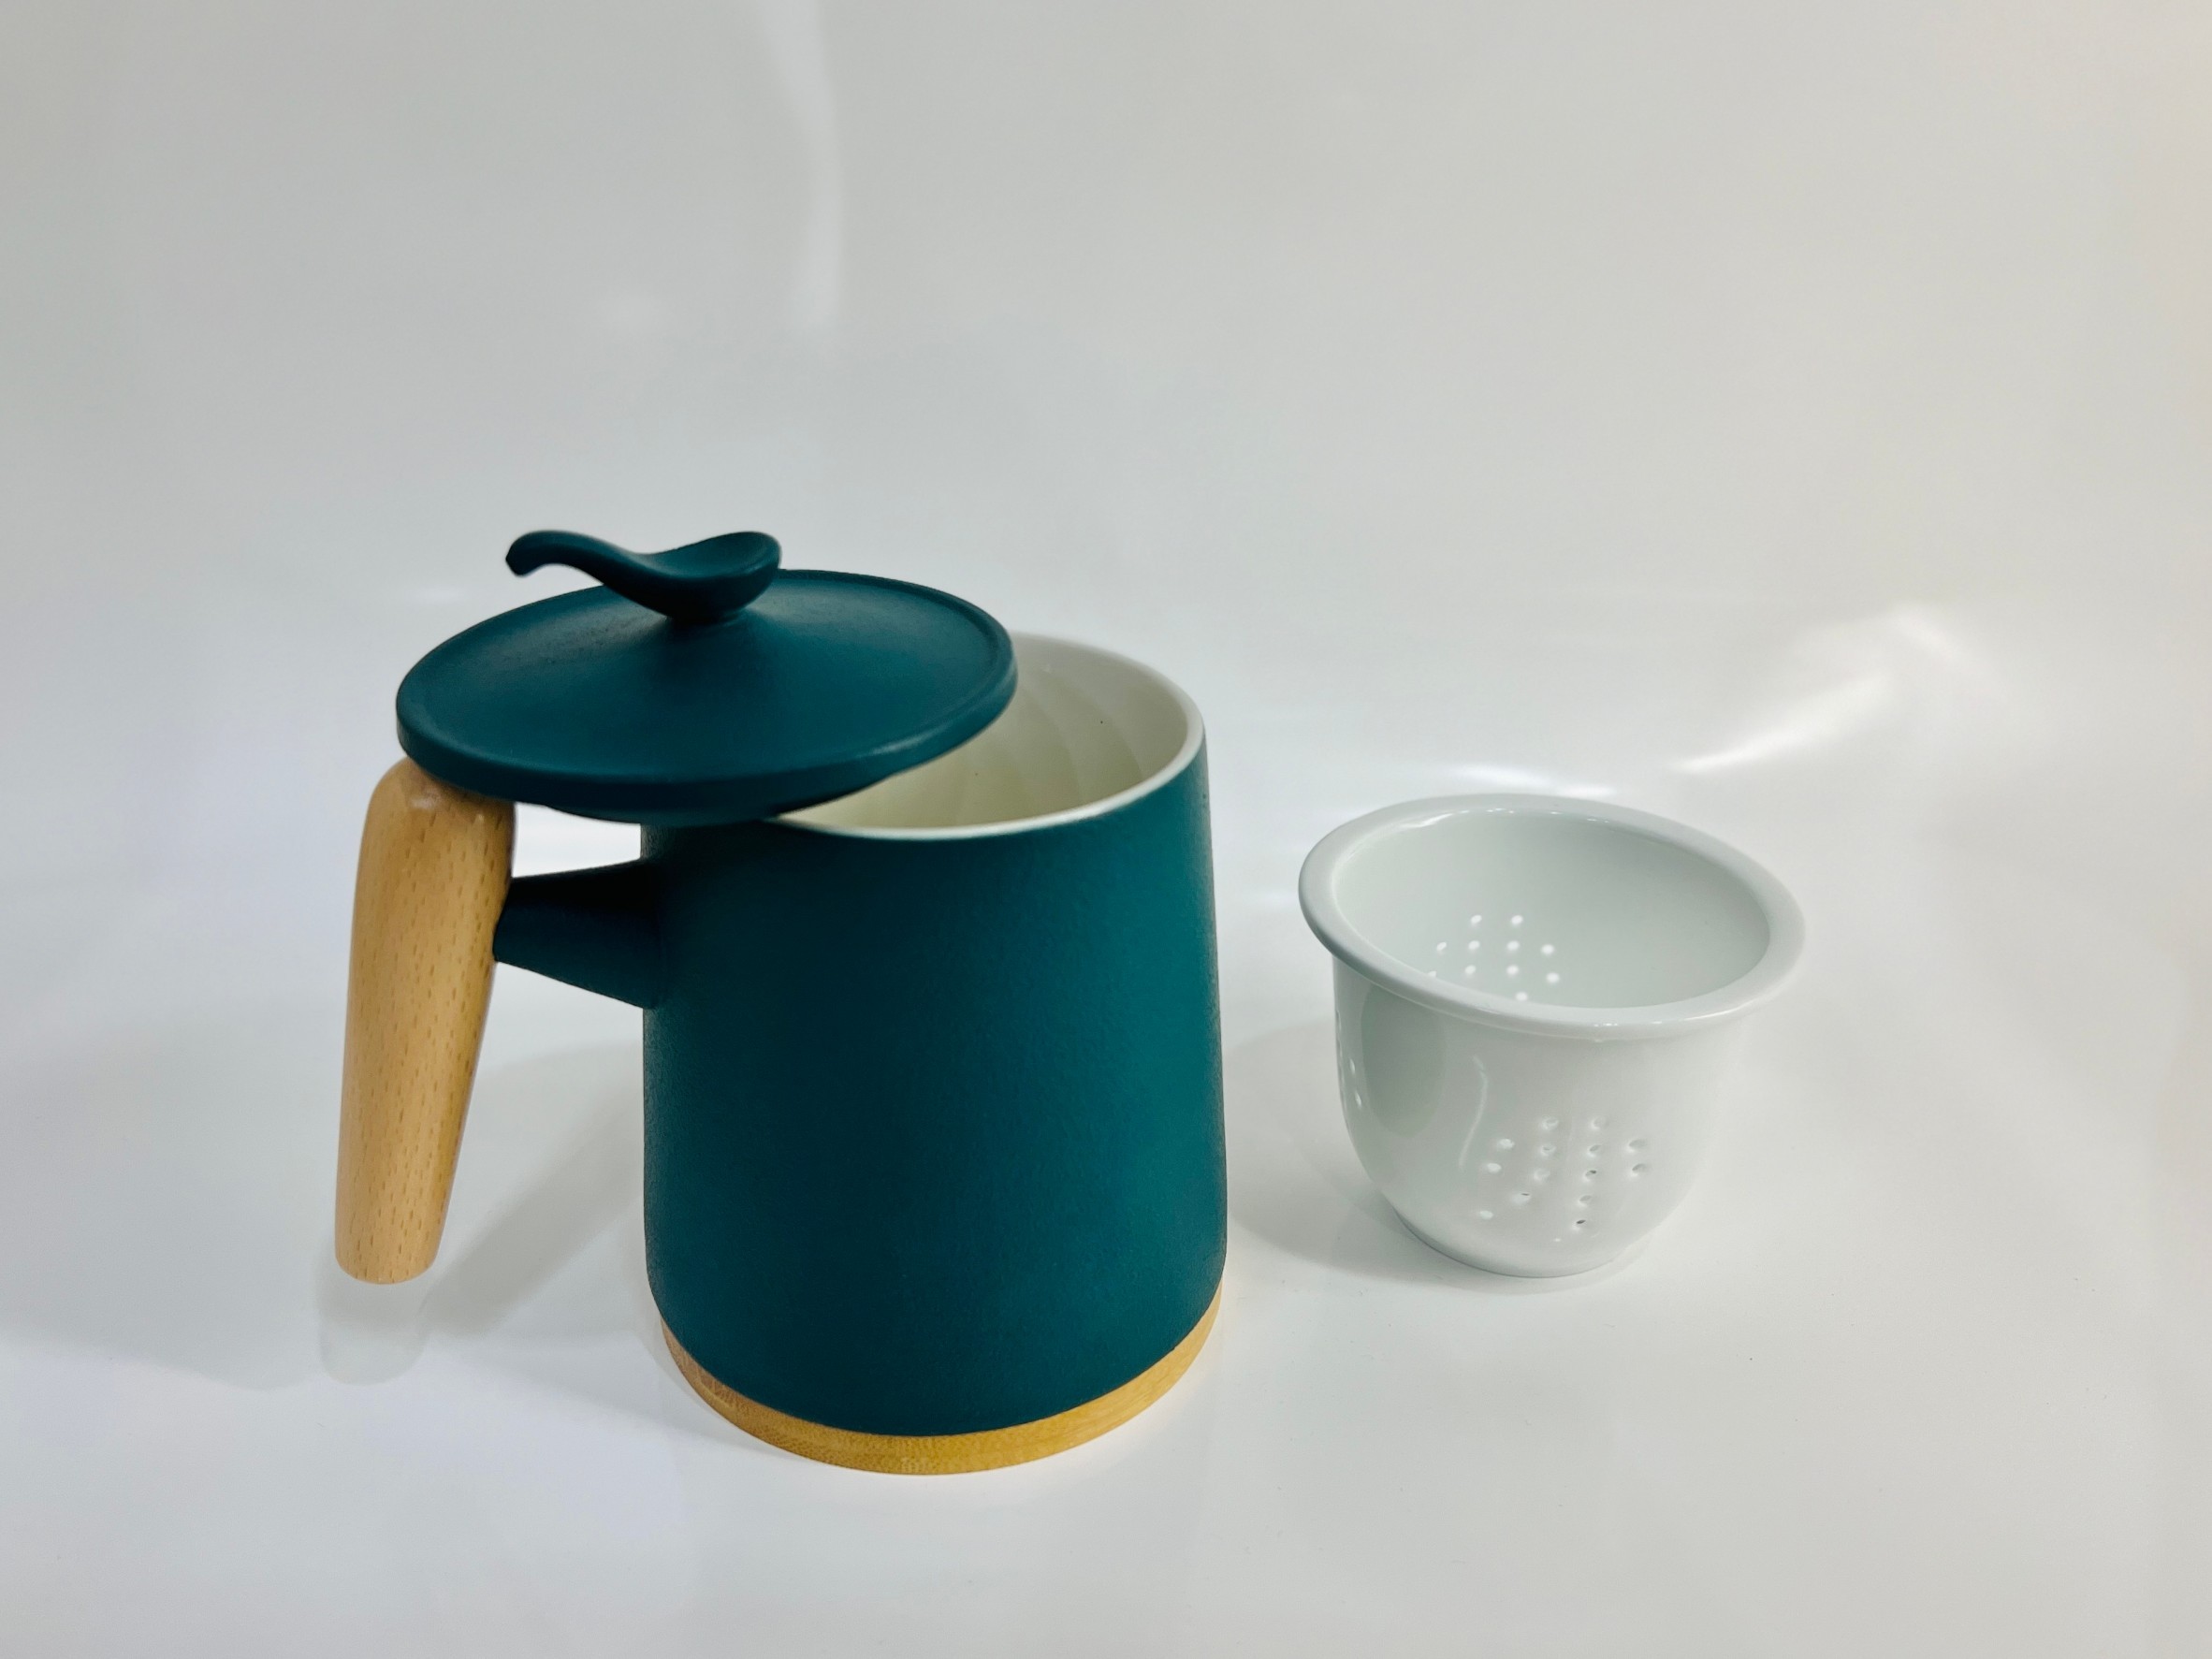 日式工匠手做馬克杯茶器組-藍綠色